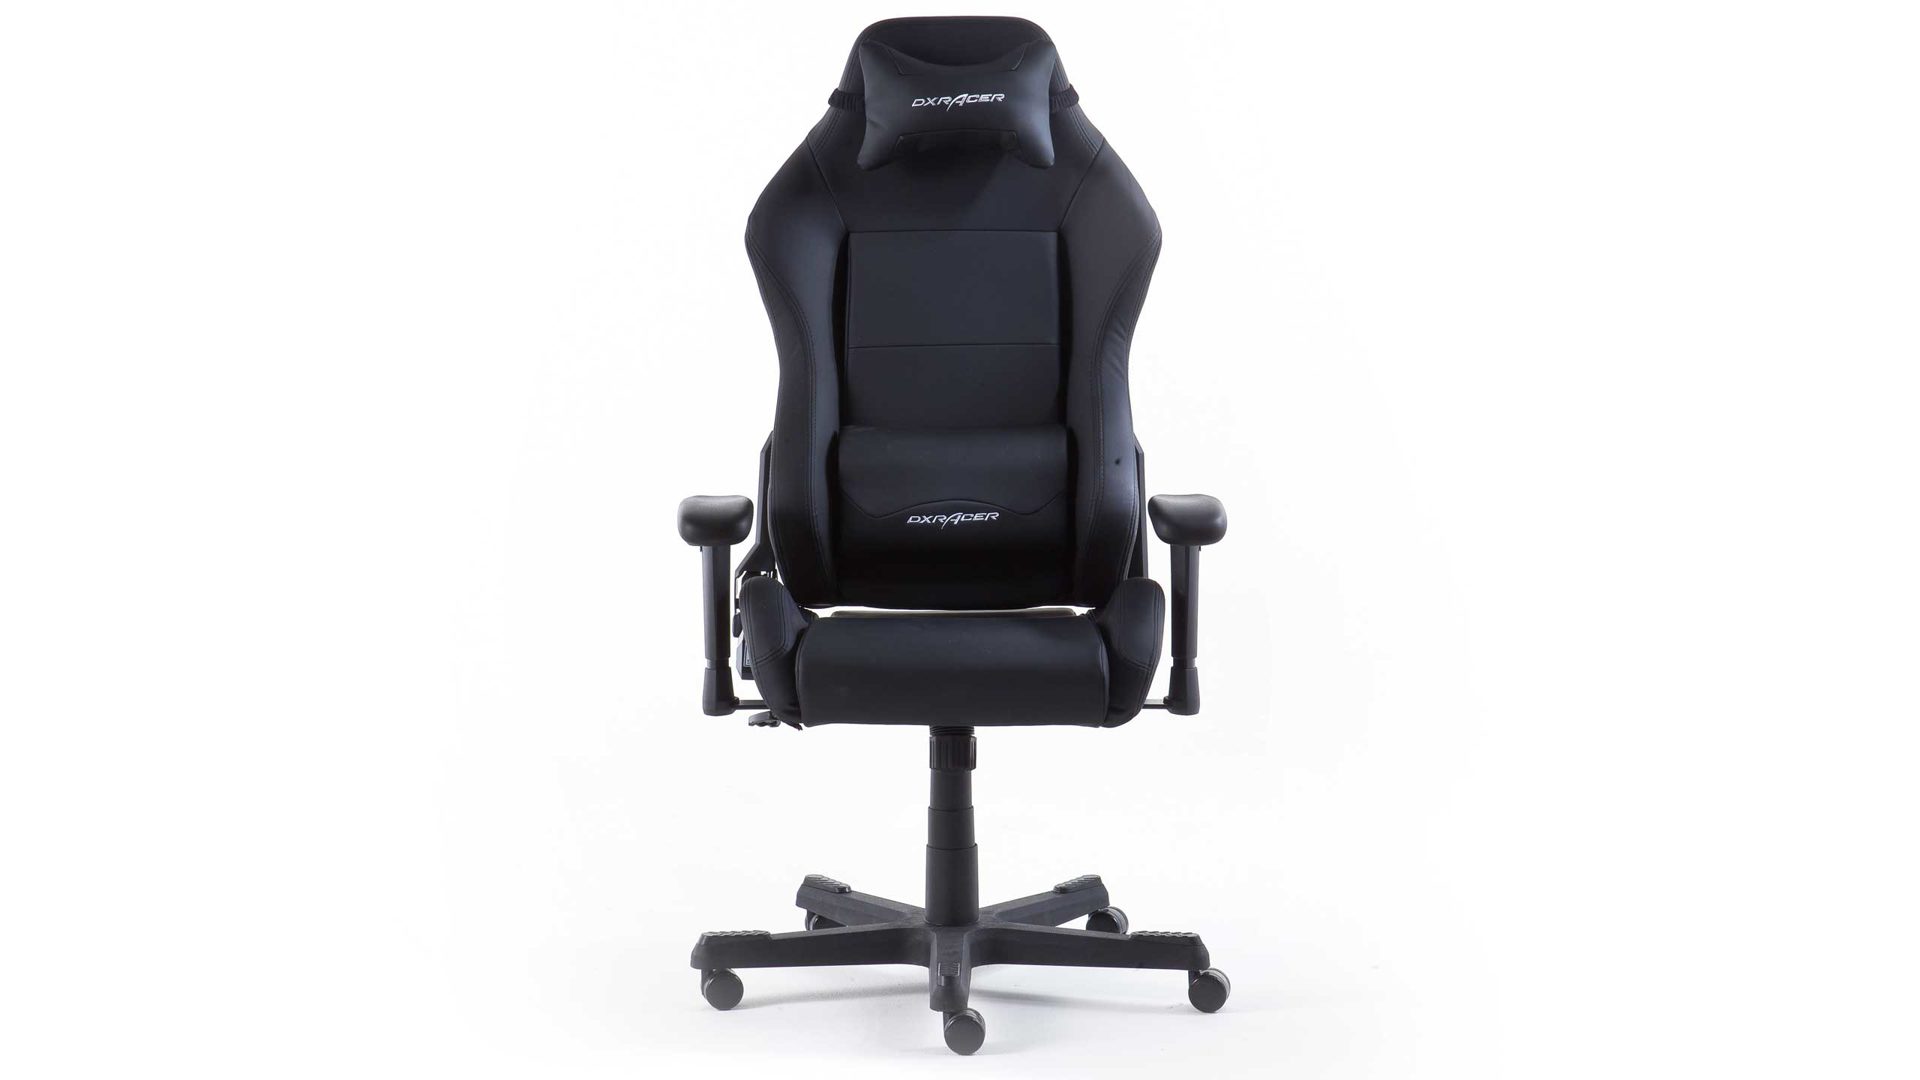 Gamesessel /-stuhl Mca furniture aus Kunstleder Kunststoff in Schwarz DX-RACER Gaming-Stuhl 3 schwarzes Kunstleder